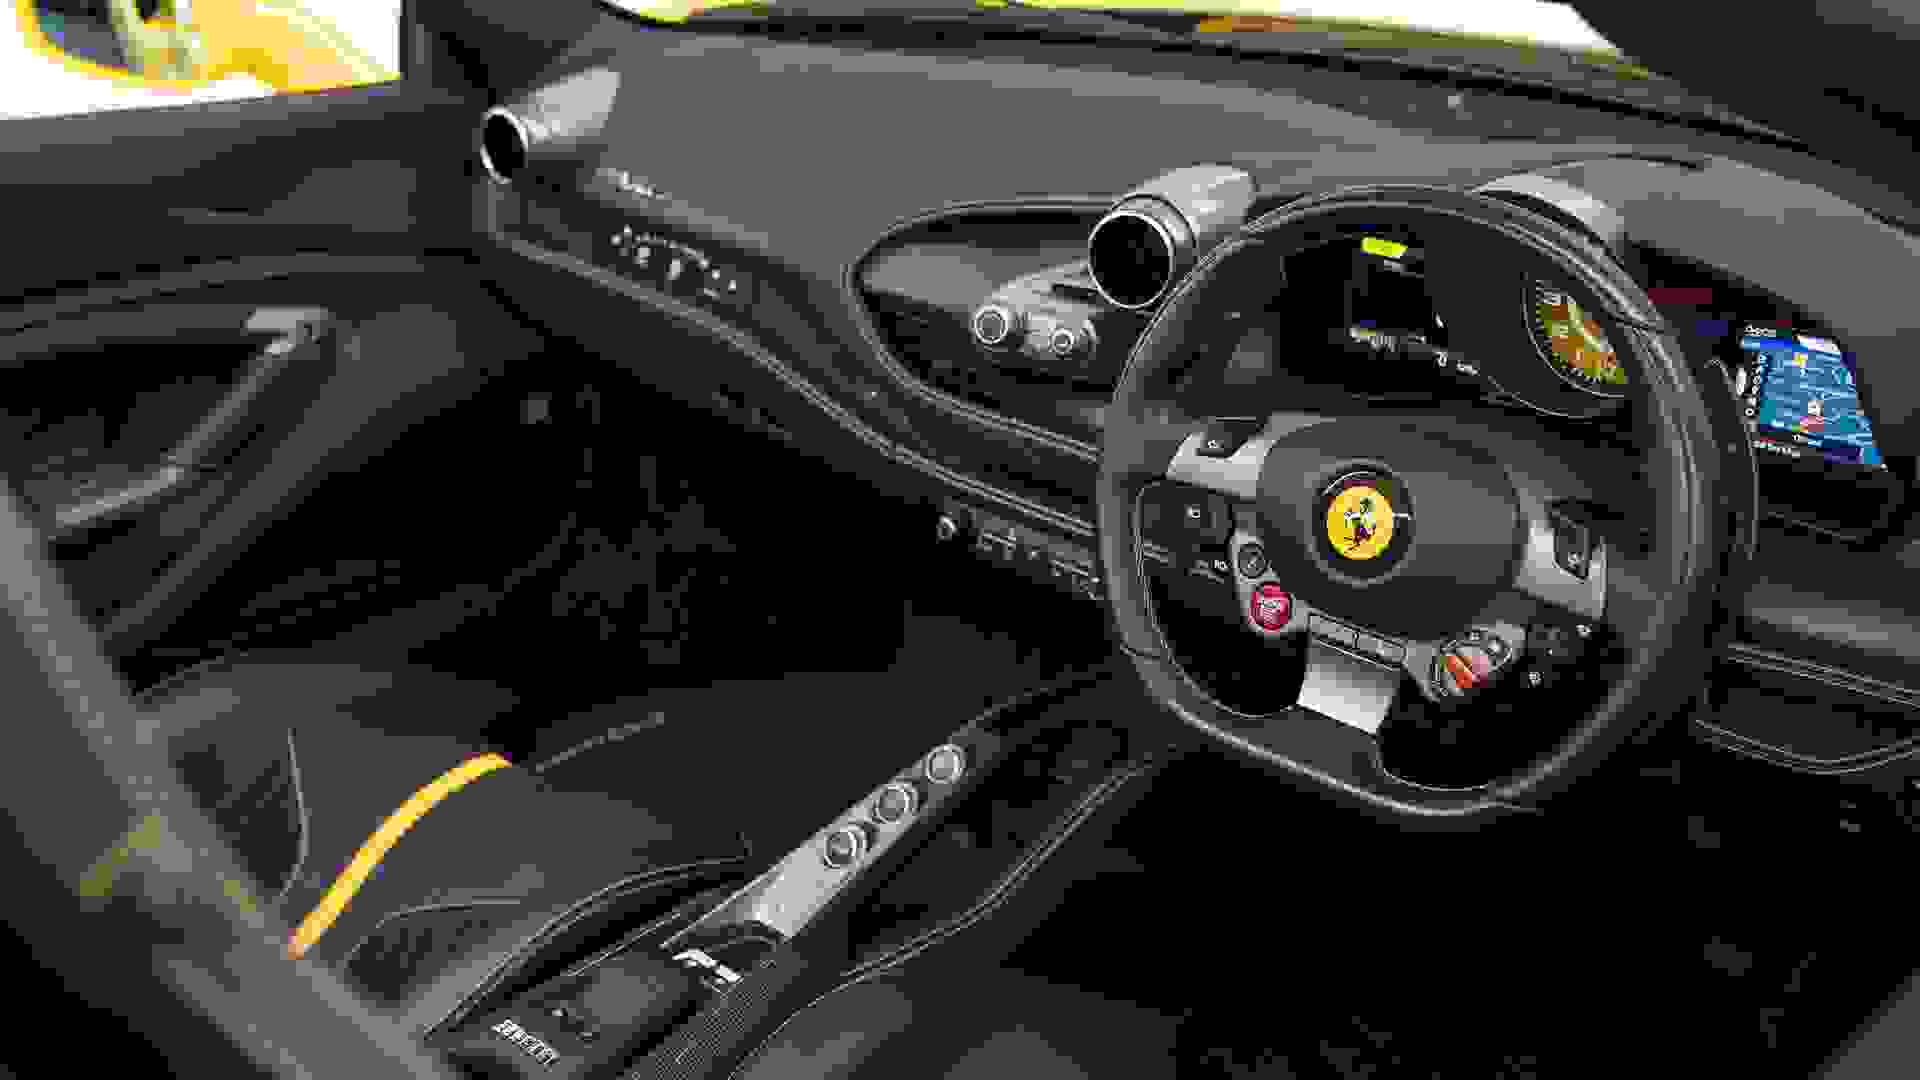 Ferrari F8 Photo 6bec3f62-7281-43b1-9008-187843a6036f.jpg